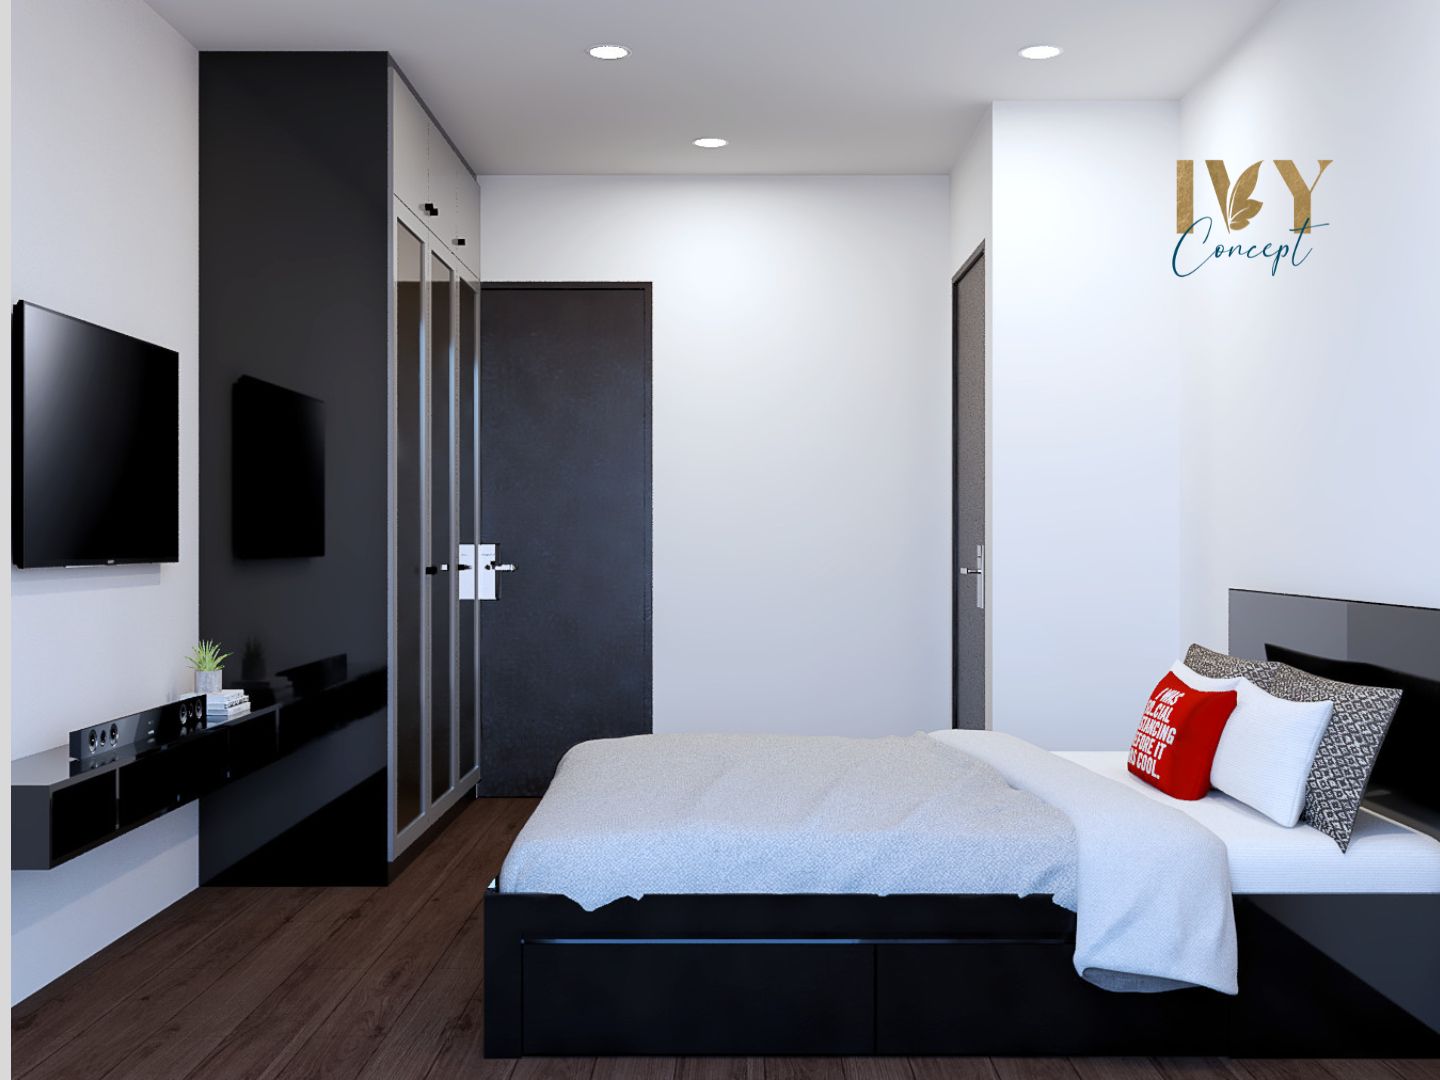 Phòng ngủ, phong cách Hiện đại Modern, thiết kế concept nội thất, căn hộ Petro Landmark